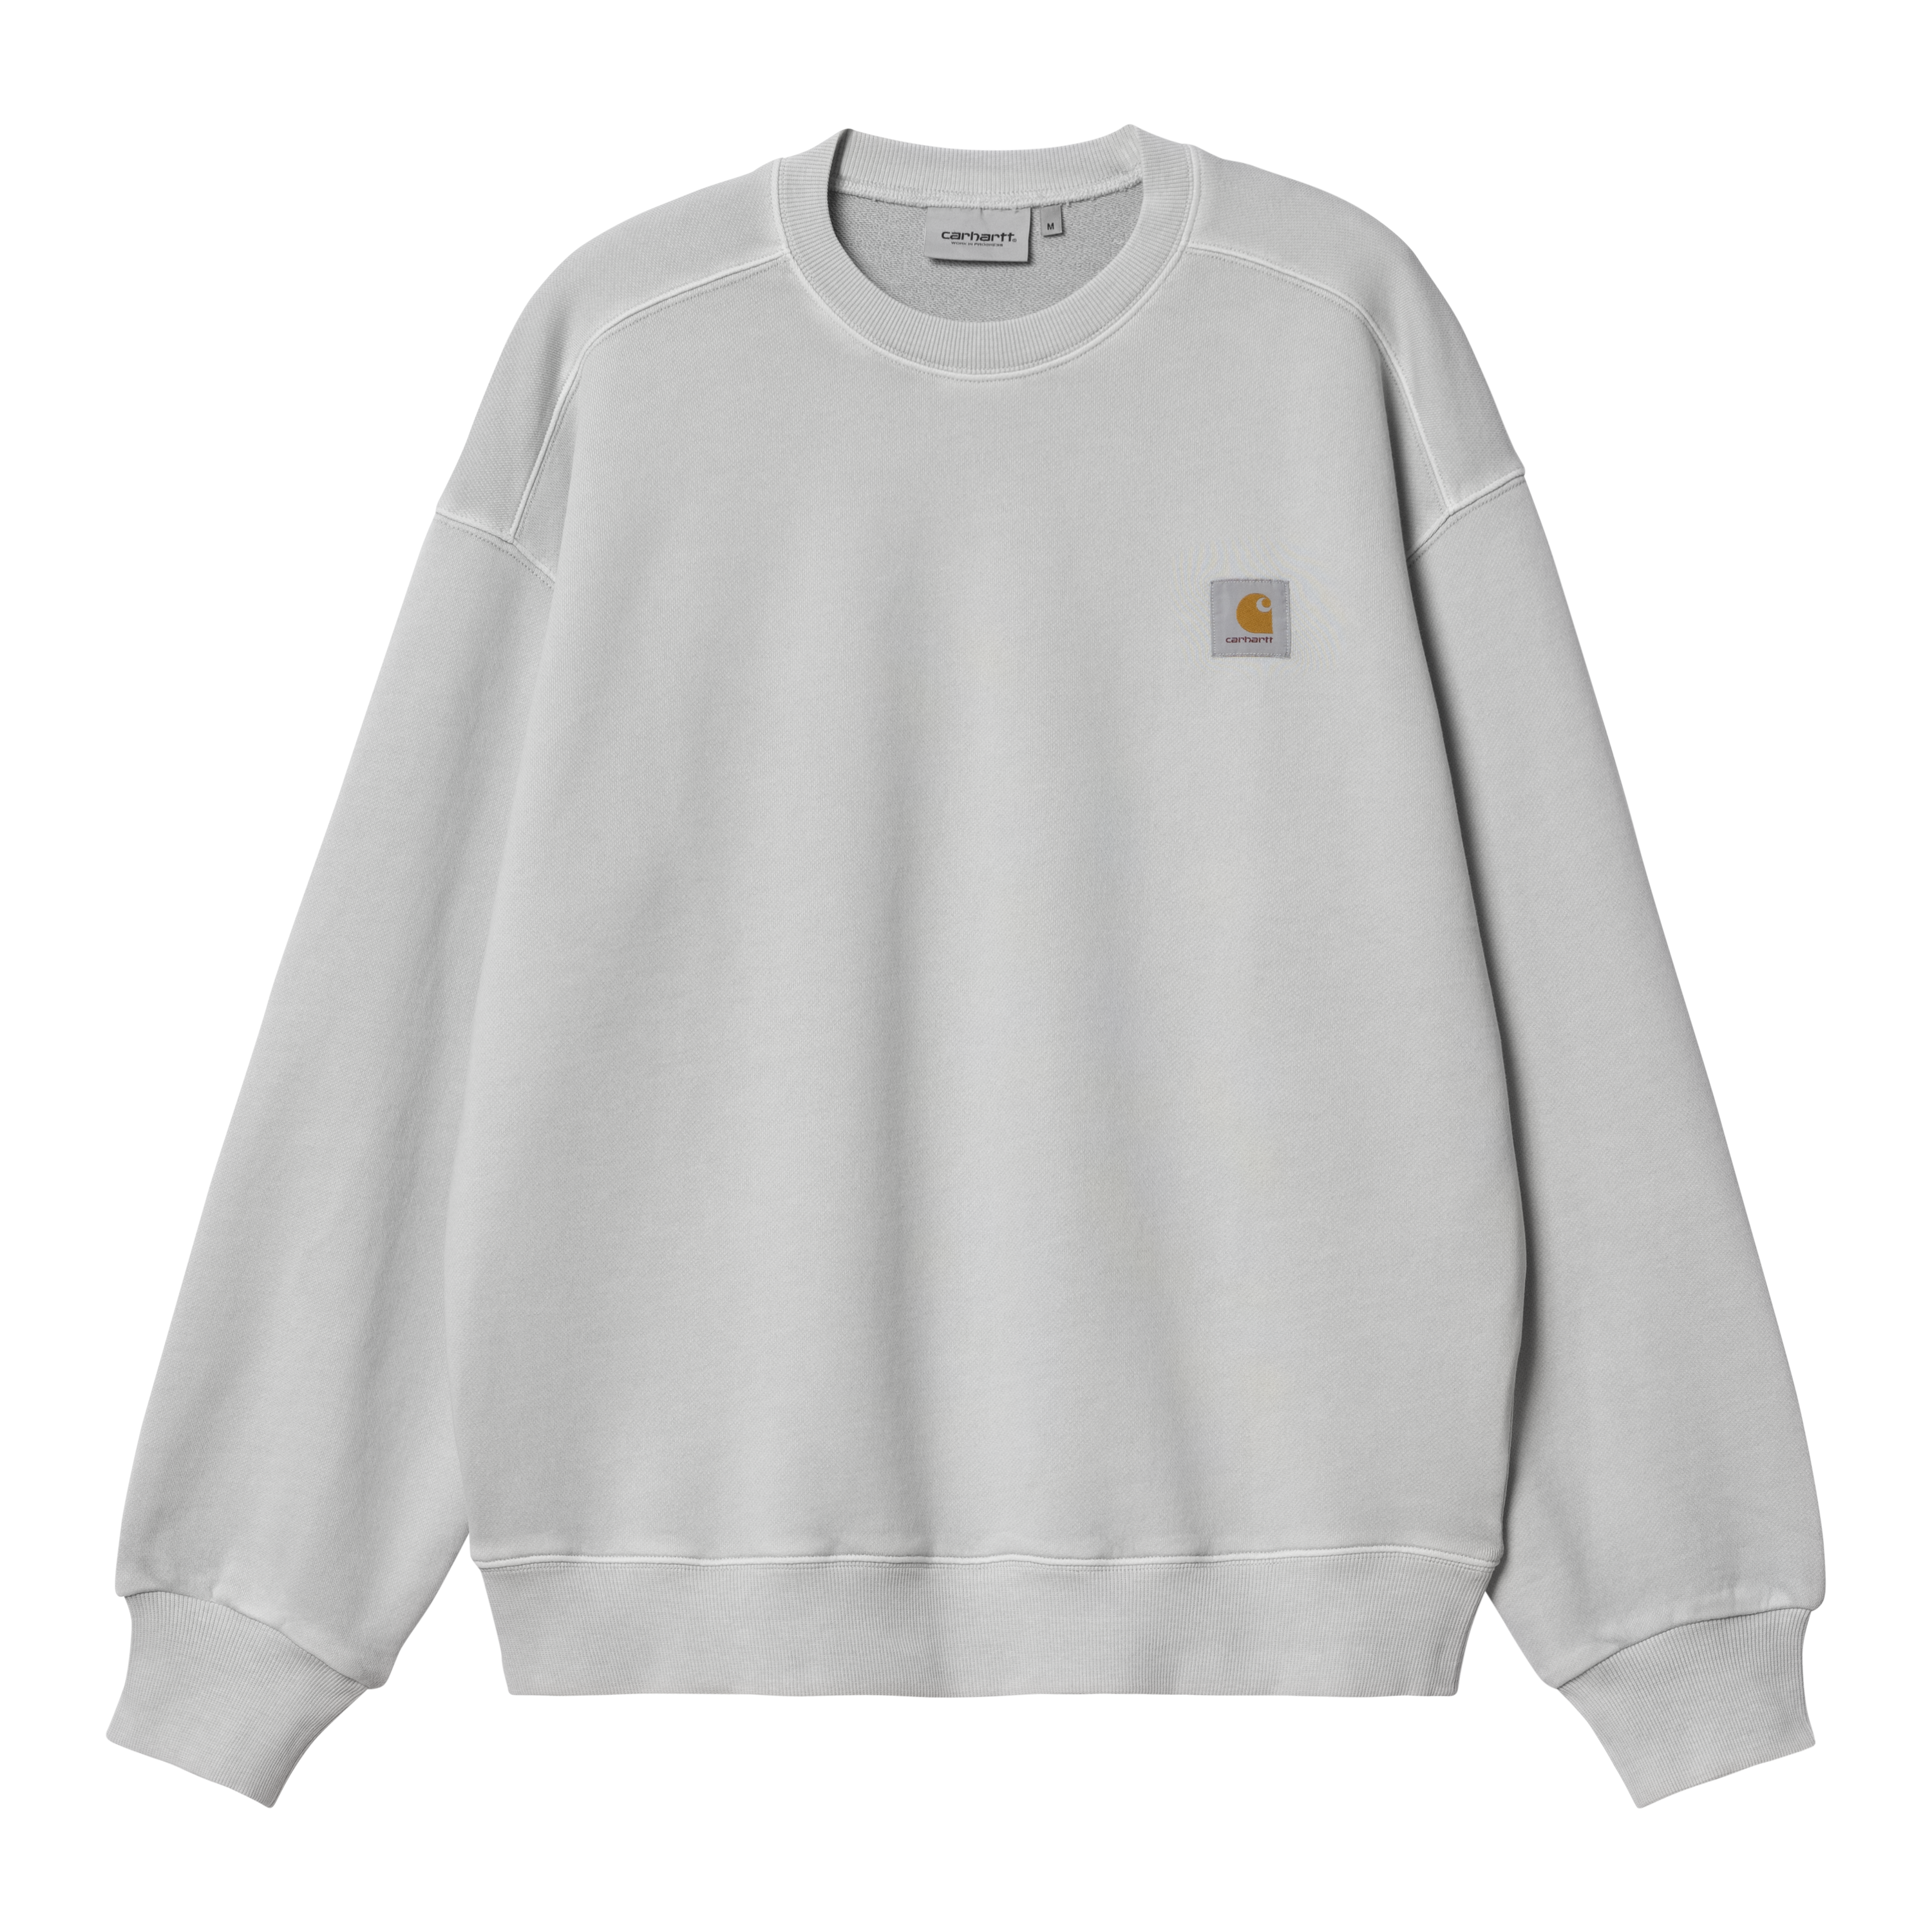 Carhartt WIP Nelson Sweatshirt in Grey